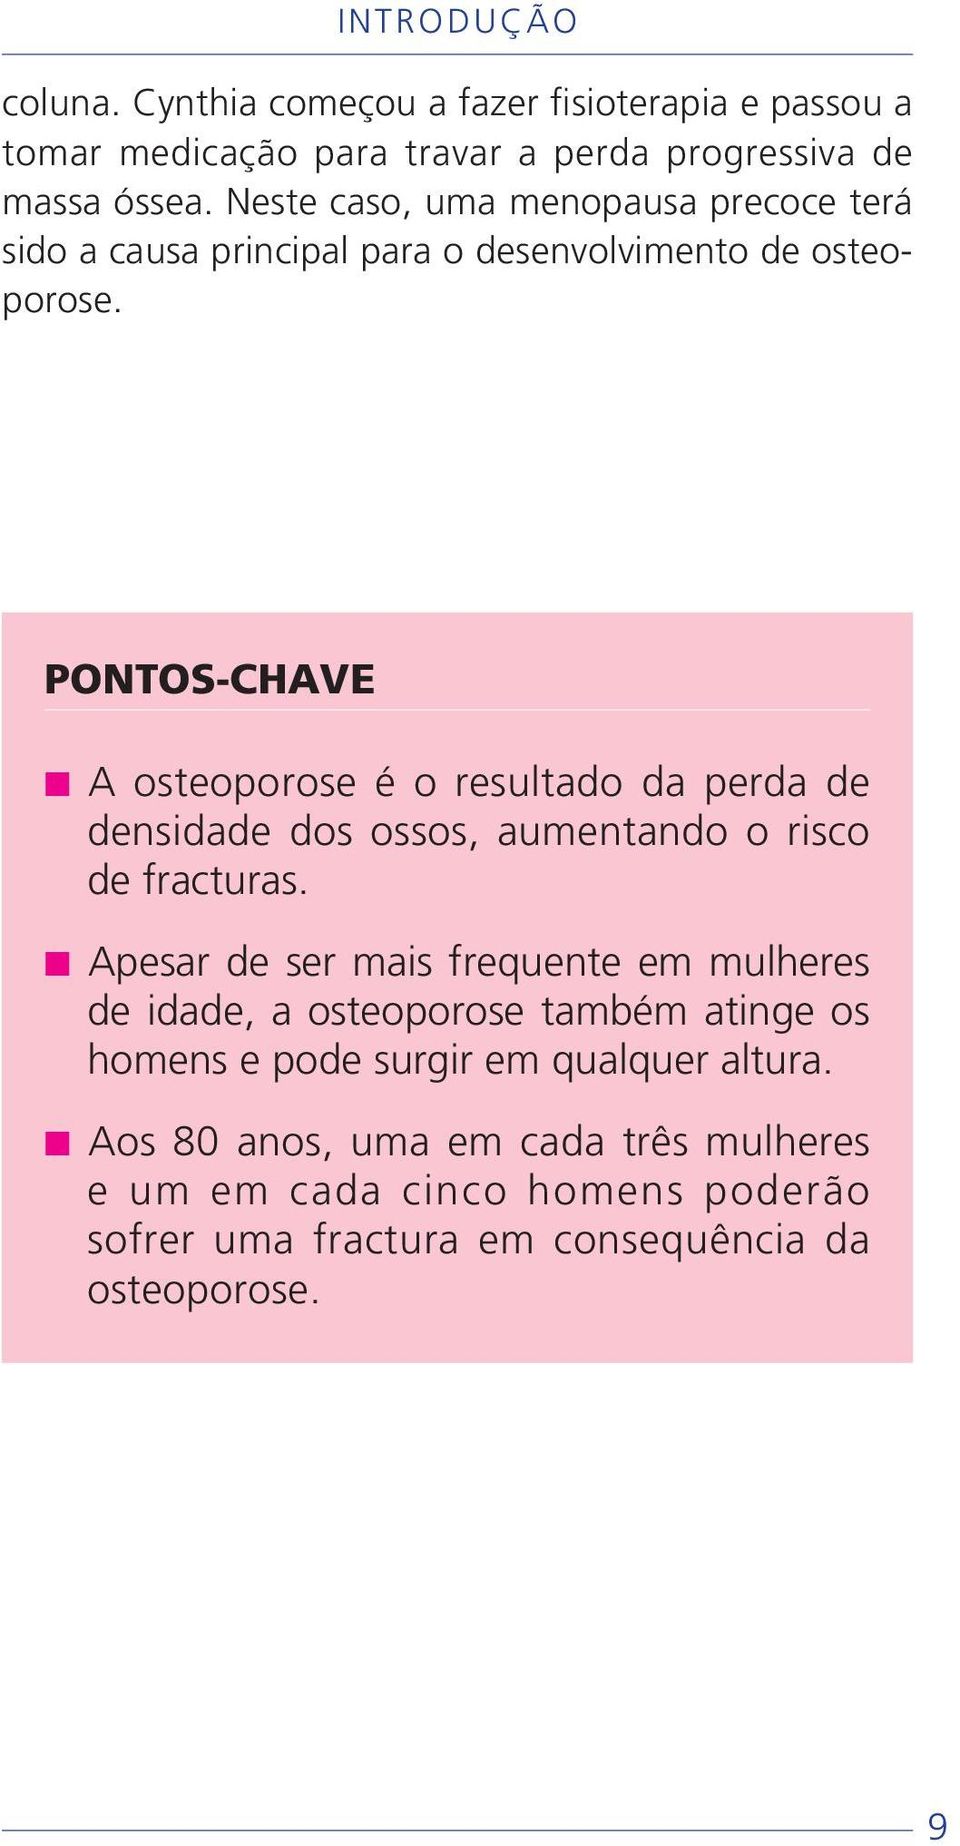 PONTOS-CHAVE A osteoporose é o resultado da perda de densidade dos ossos, aumentando o risco de fracturas.